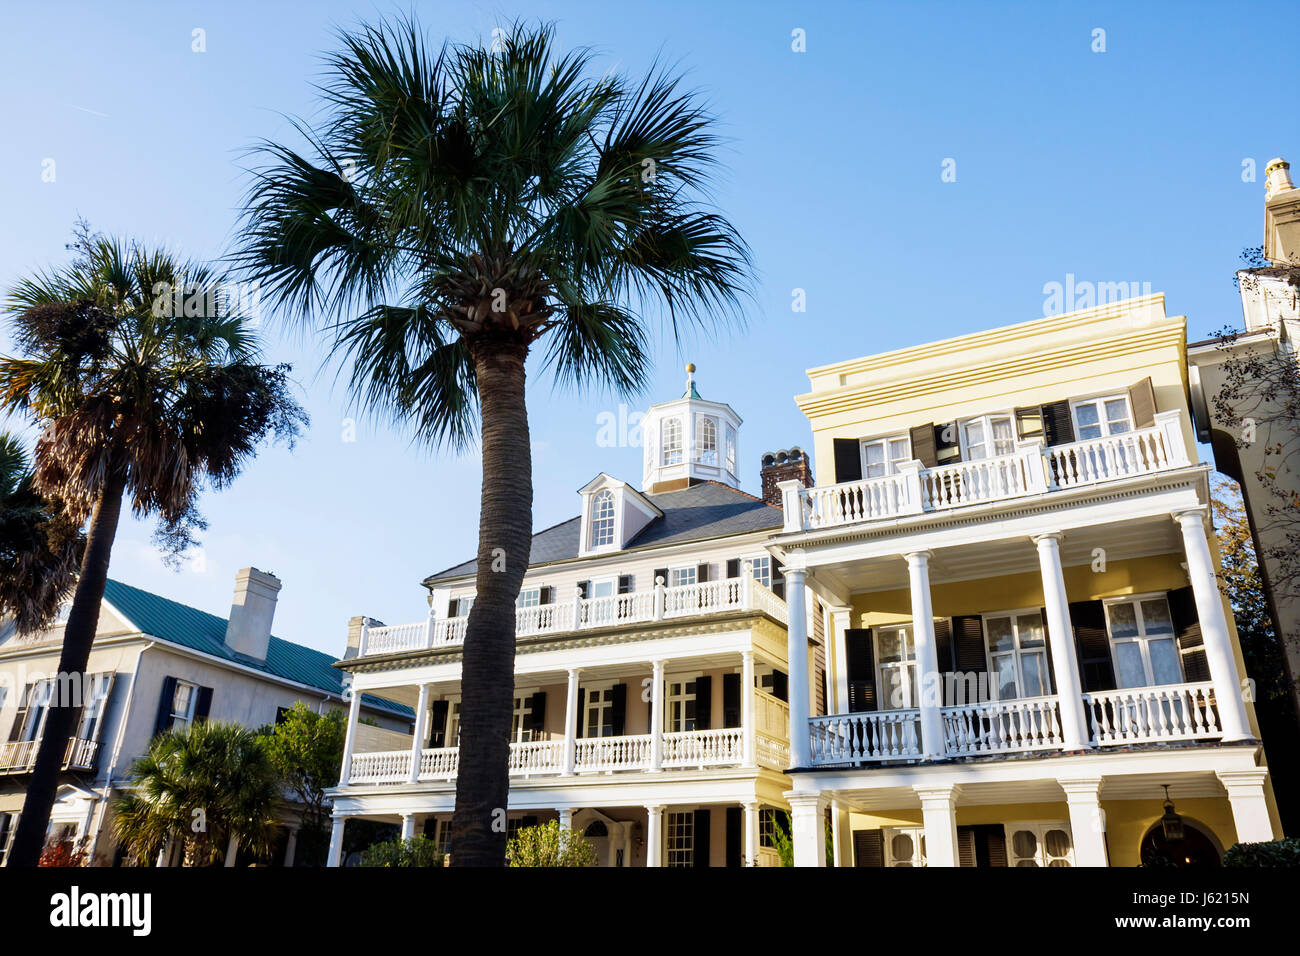 Charleston South Carolina, historischer Bezirk, Erhaltung, die Batterie, Haus Häuser Häuser Residenz, Haus Häuser Häuser Residenz mansio Stockfoto